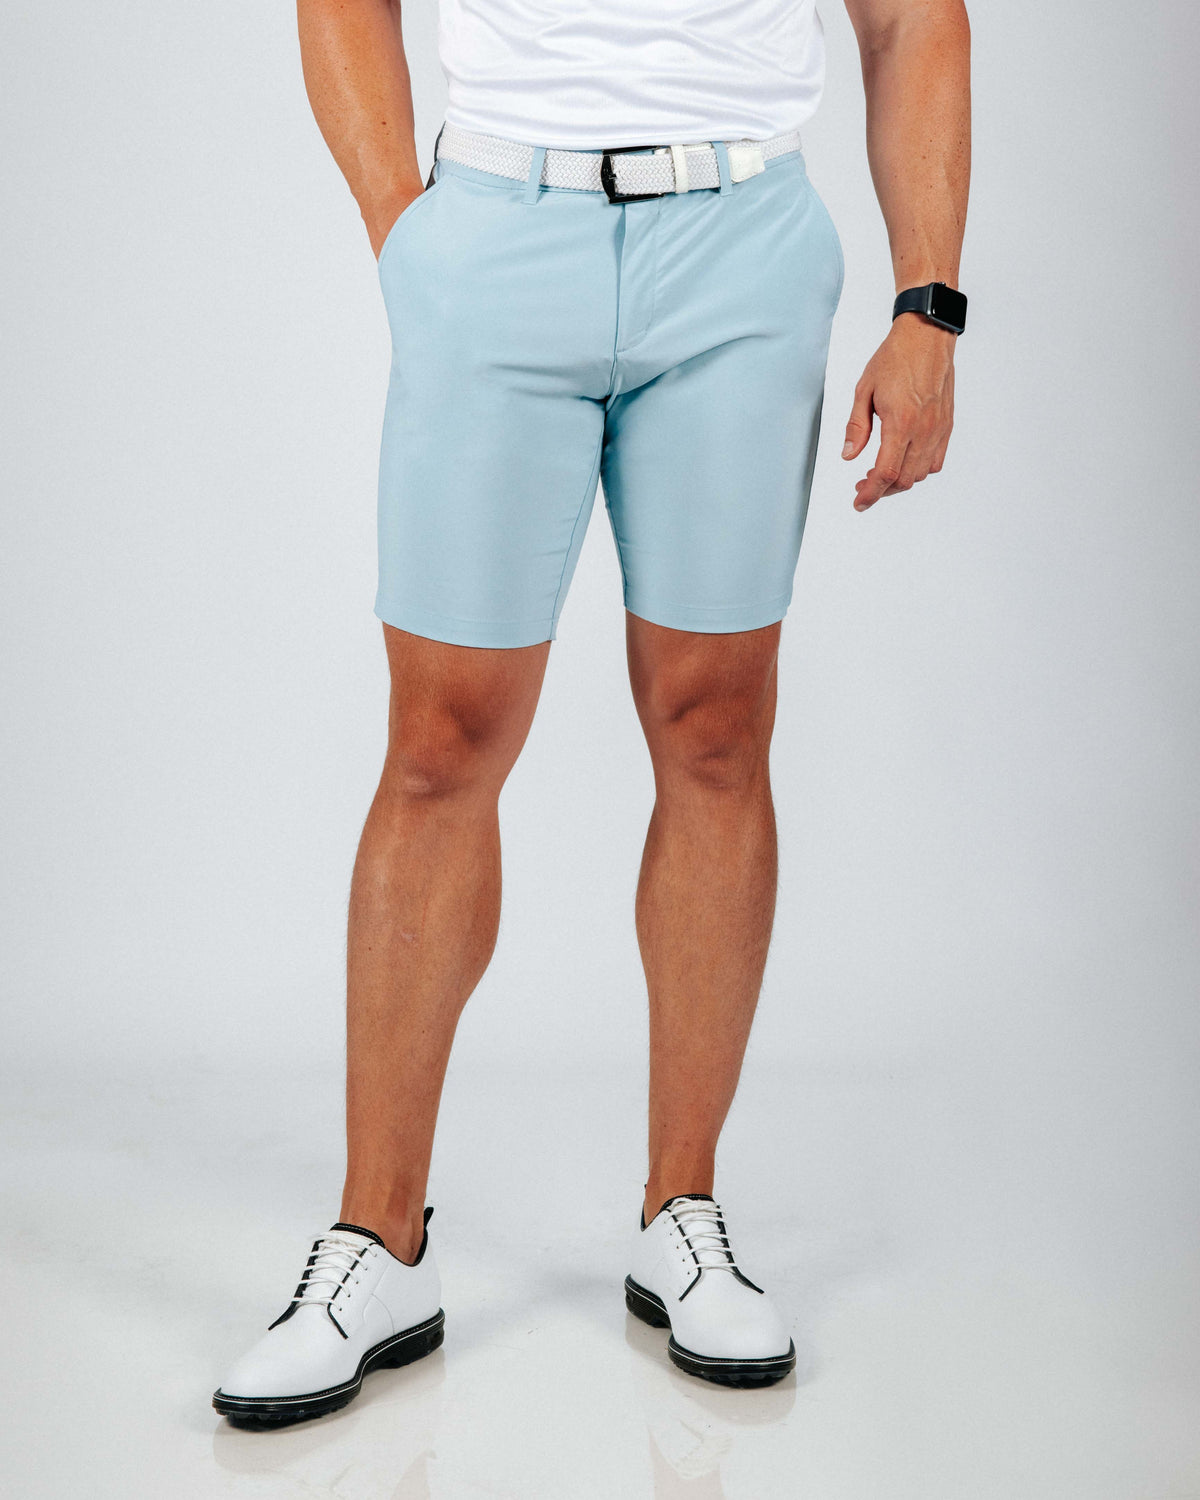 Primo Light Blue Shorts - 7", 9", 11"